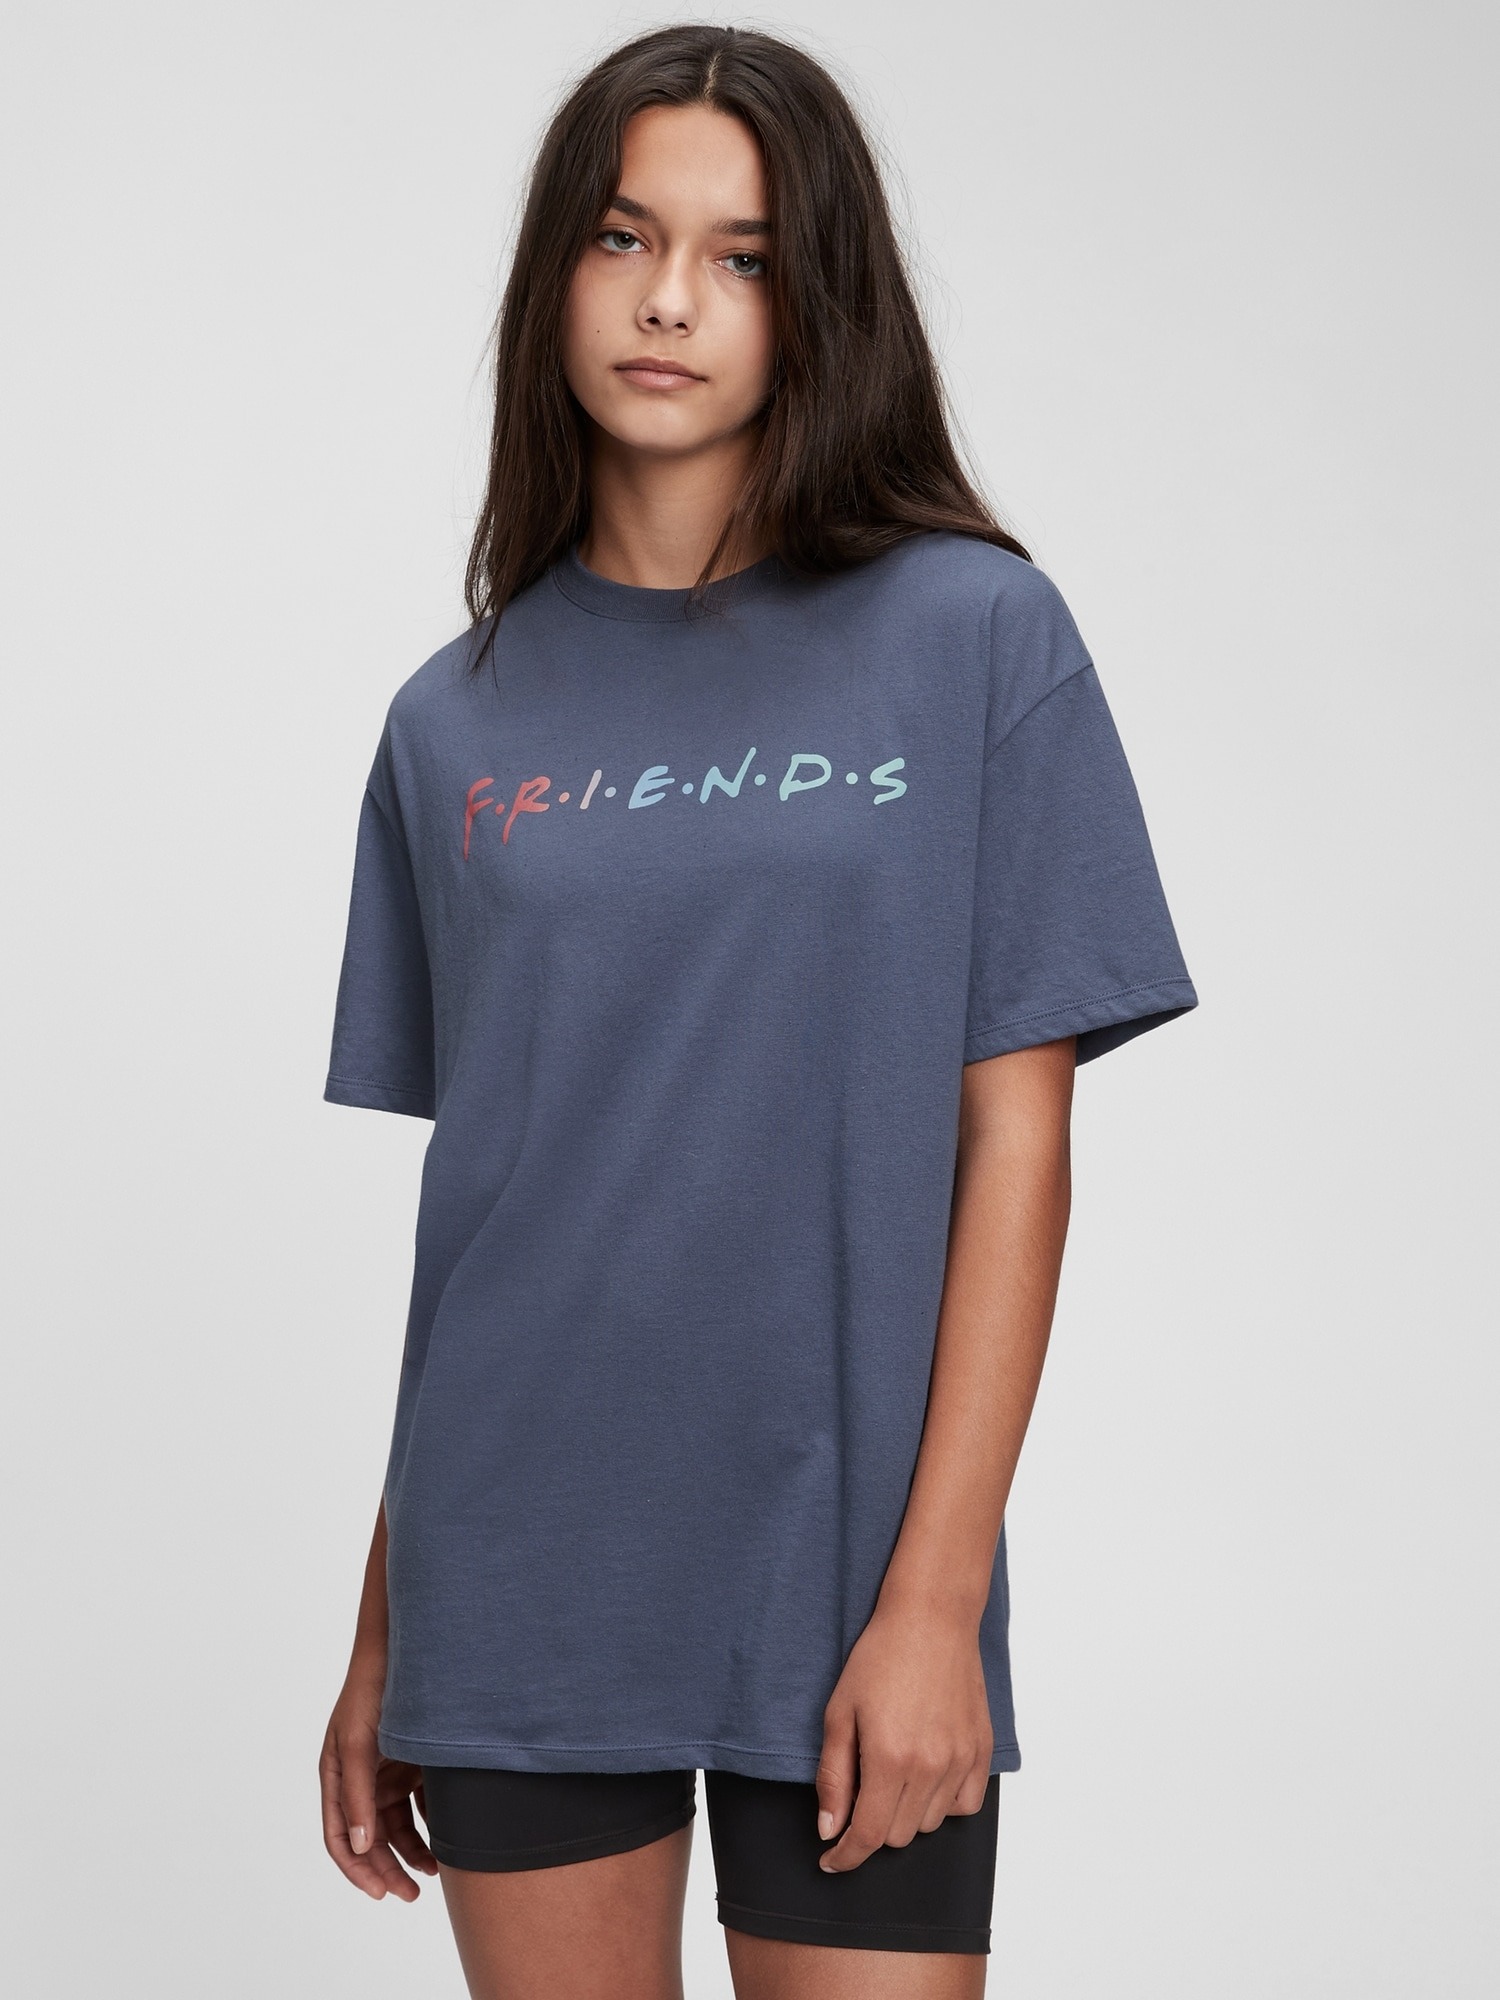 Gap Teen Friends Baskılı T-Shirt. 1